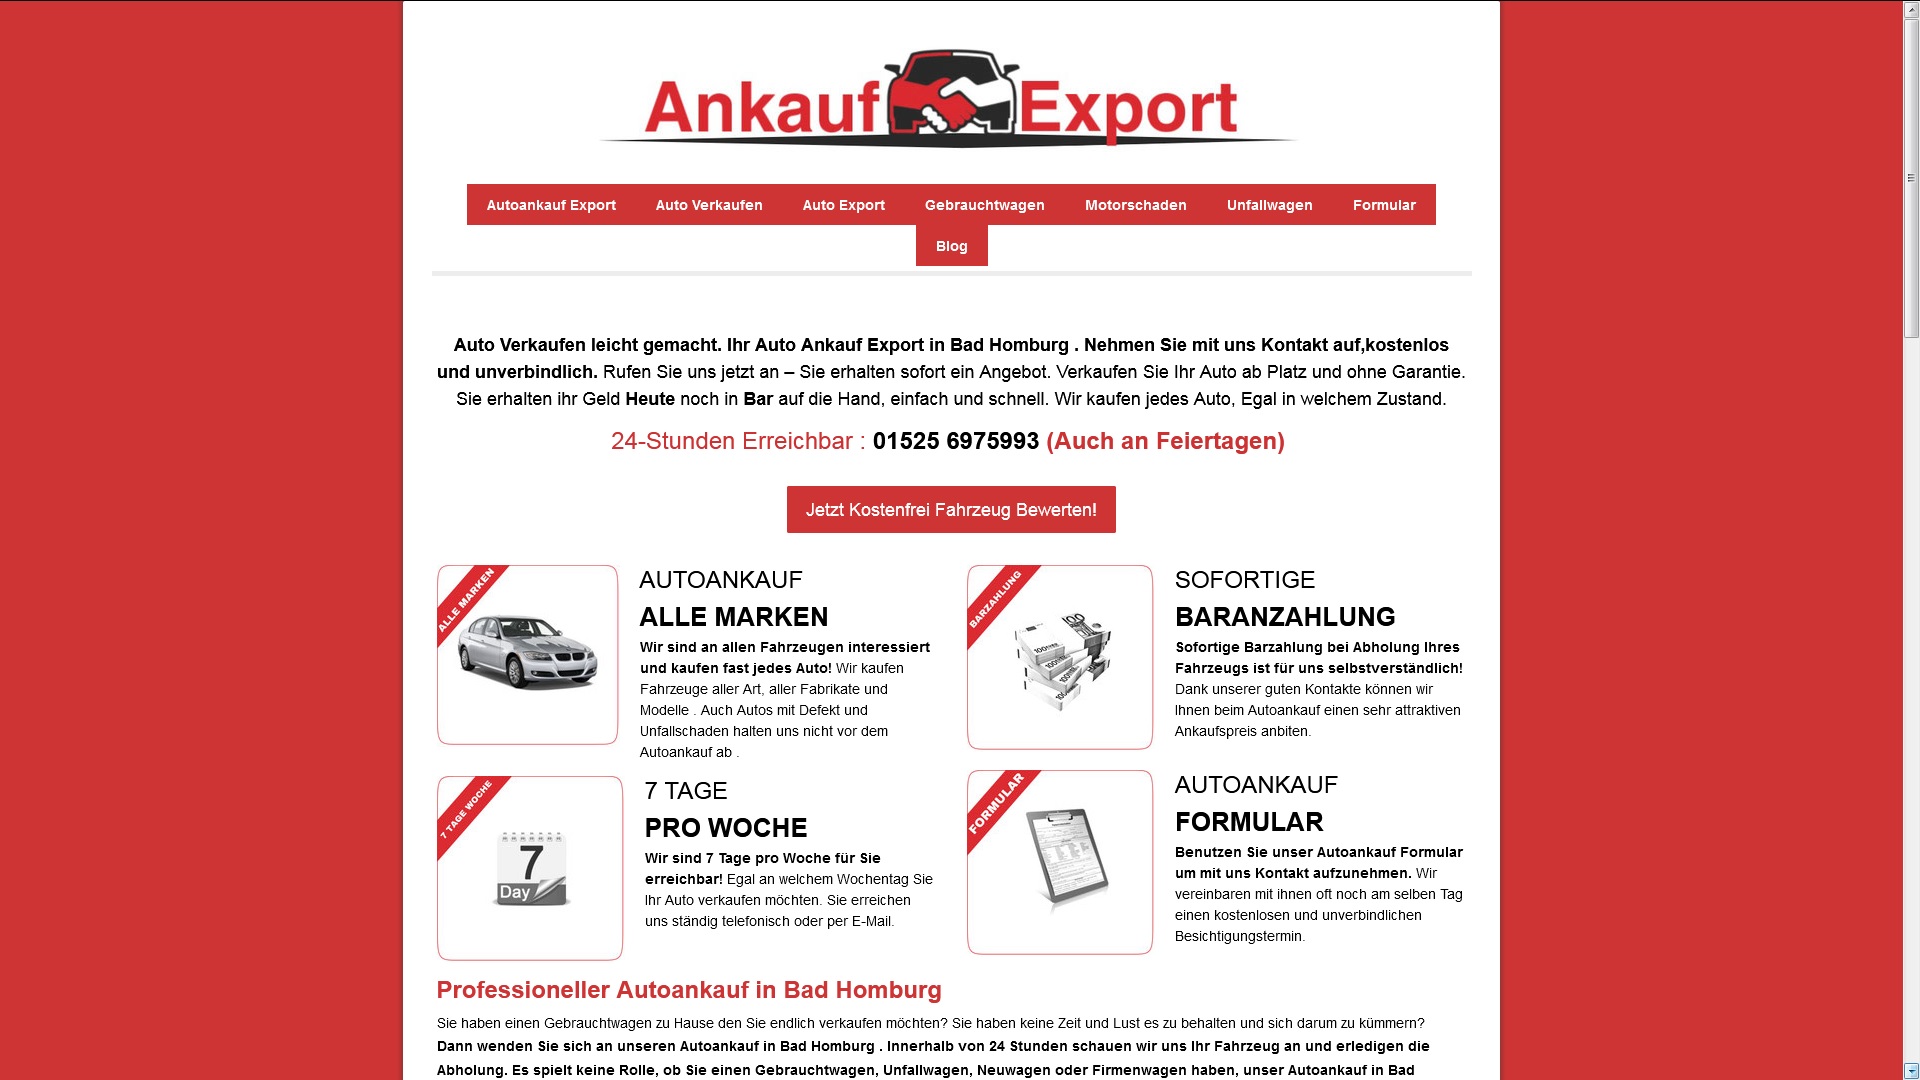 autoankauf karlsruhe kauft dein gebrauchtwagen - Autoankauf Karlsruhe kauft dein Gebrauchtwagen